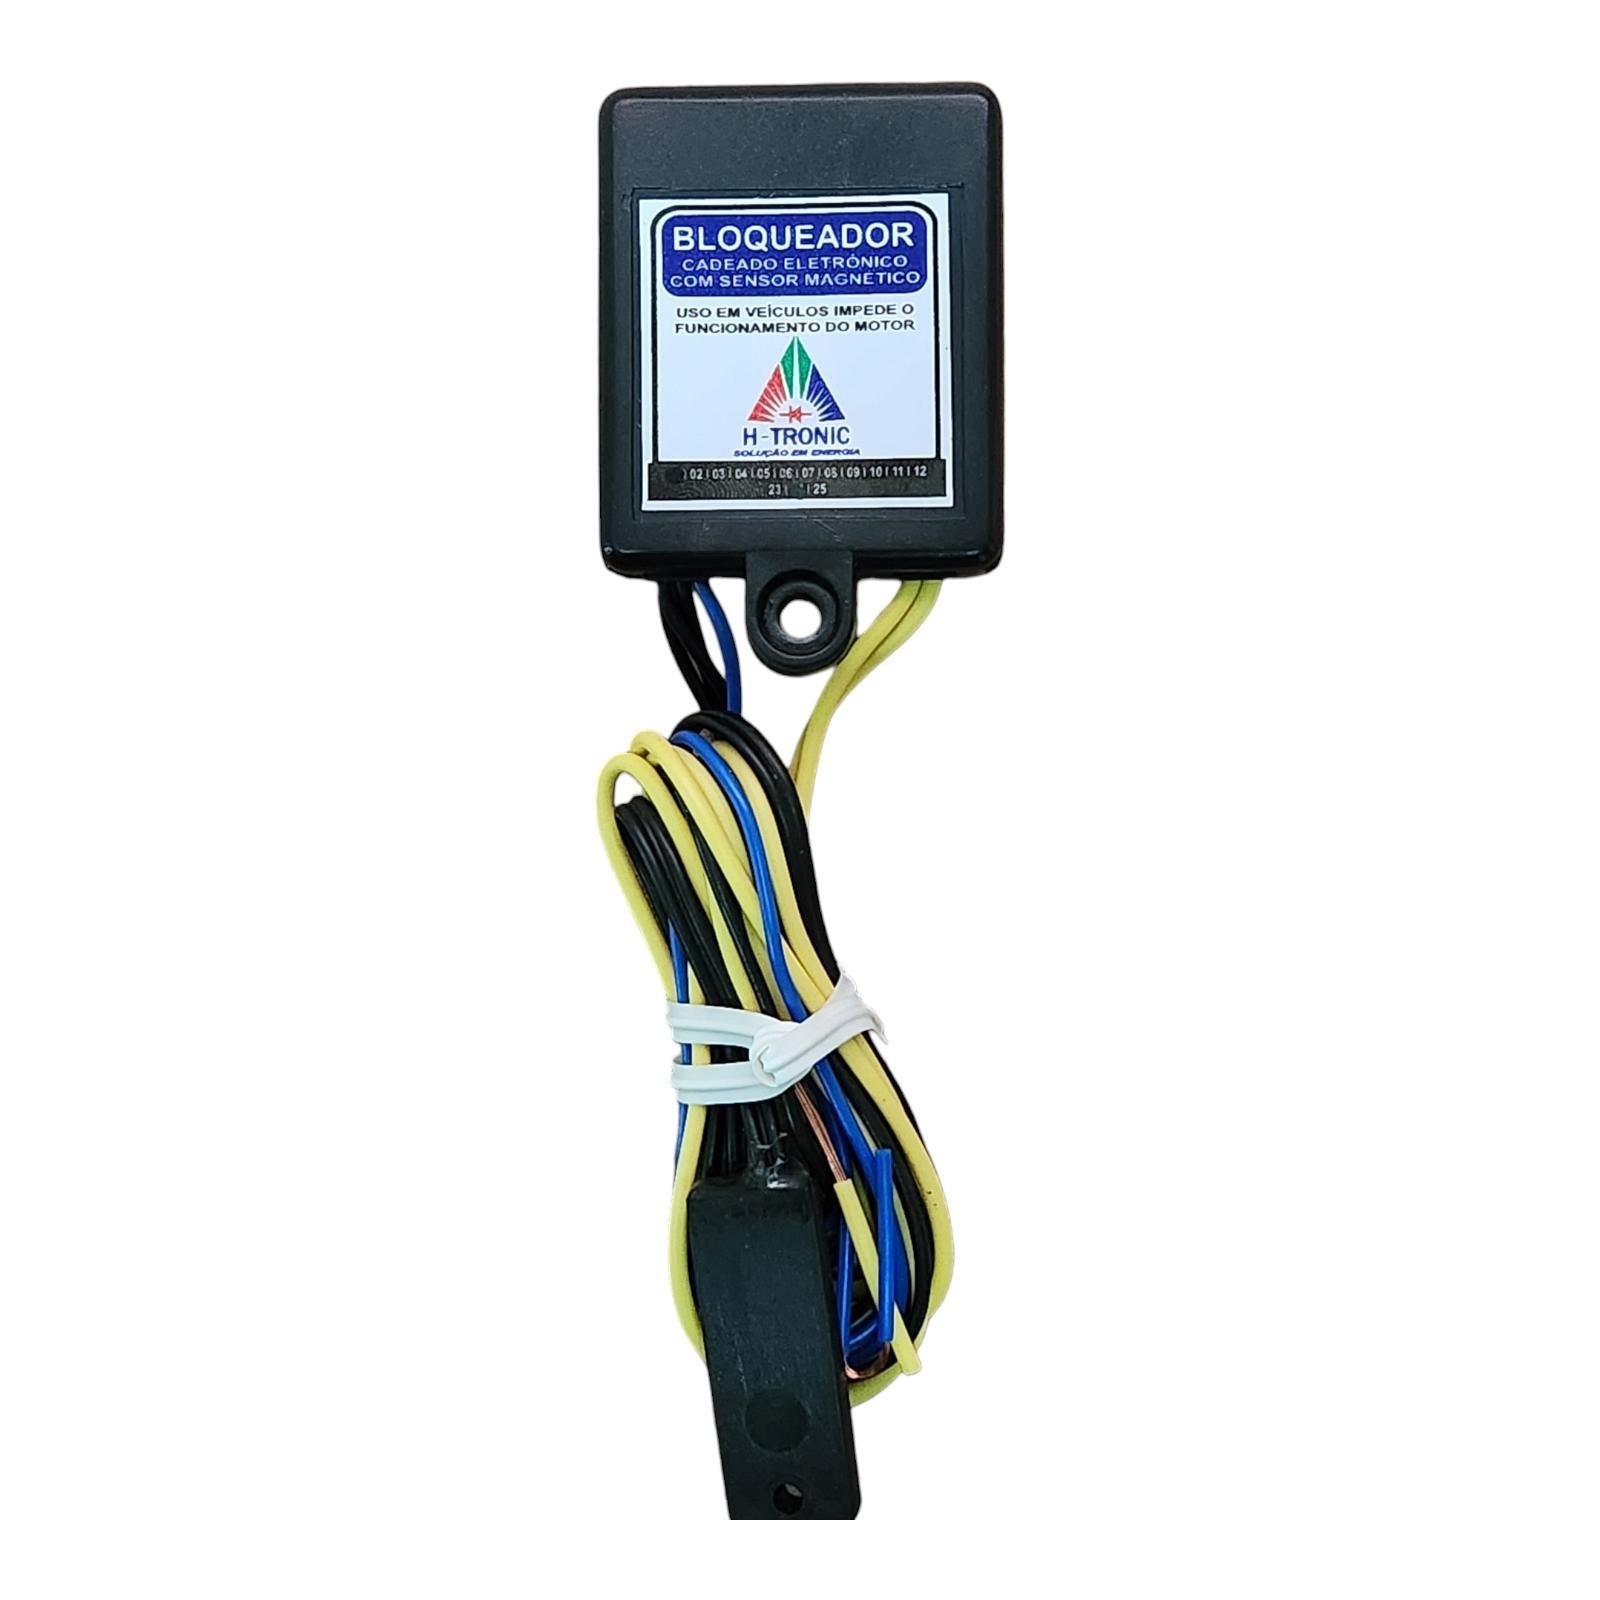 Bloqueador Veicular Automotivo Antifurto Sensor Magnetico Carro Moto 12v H-tronic - 3